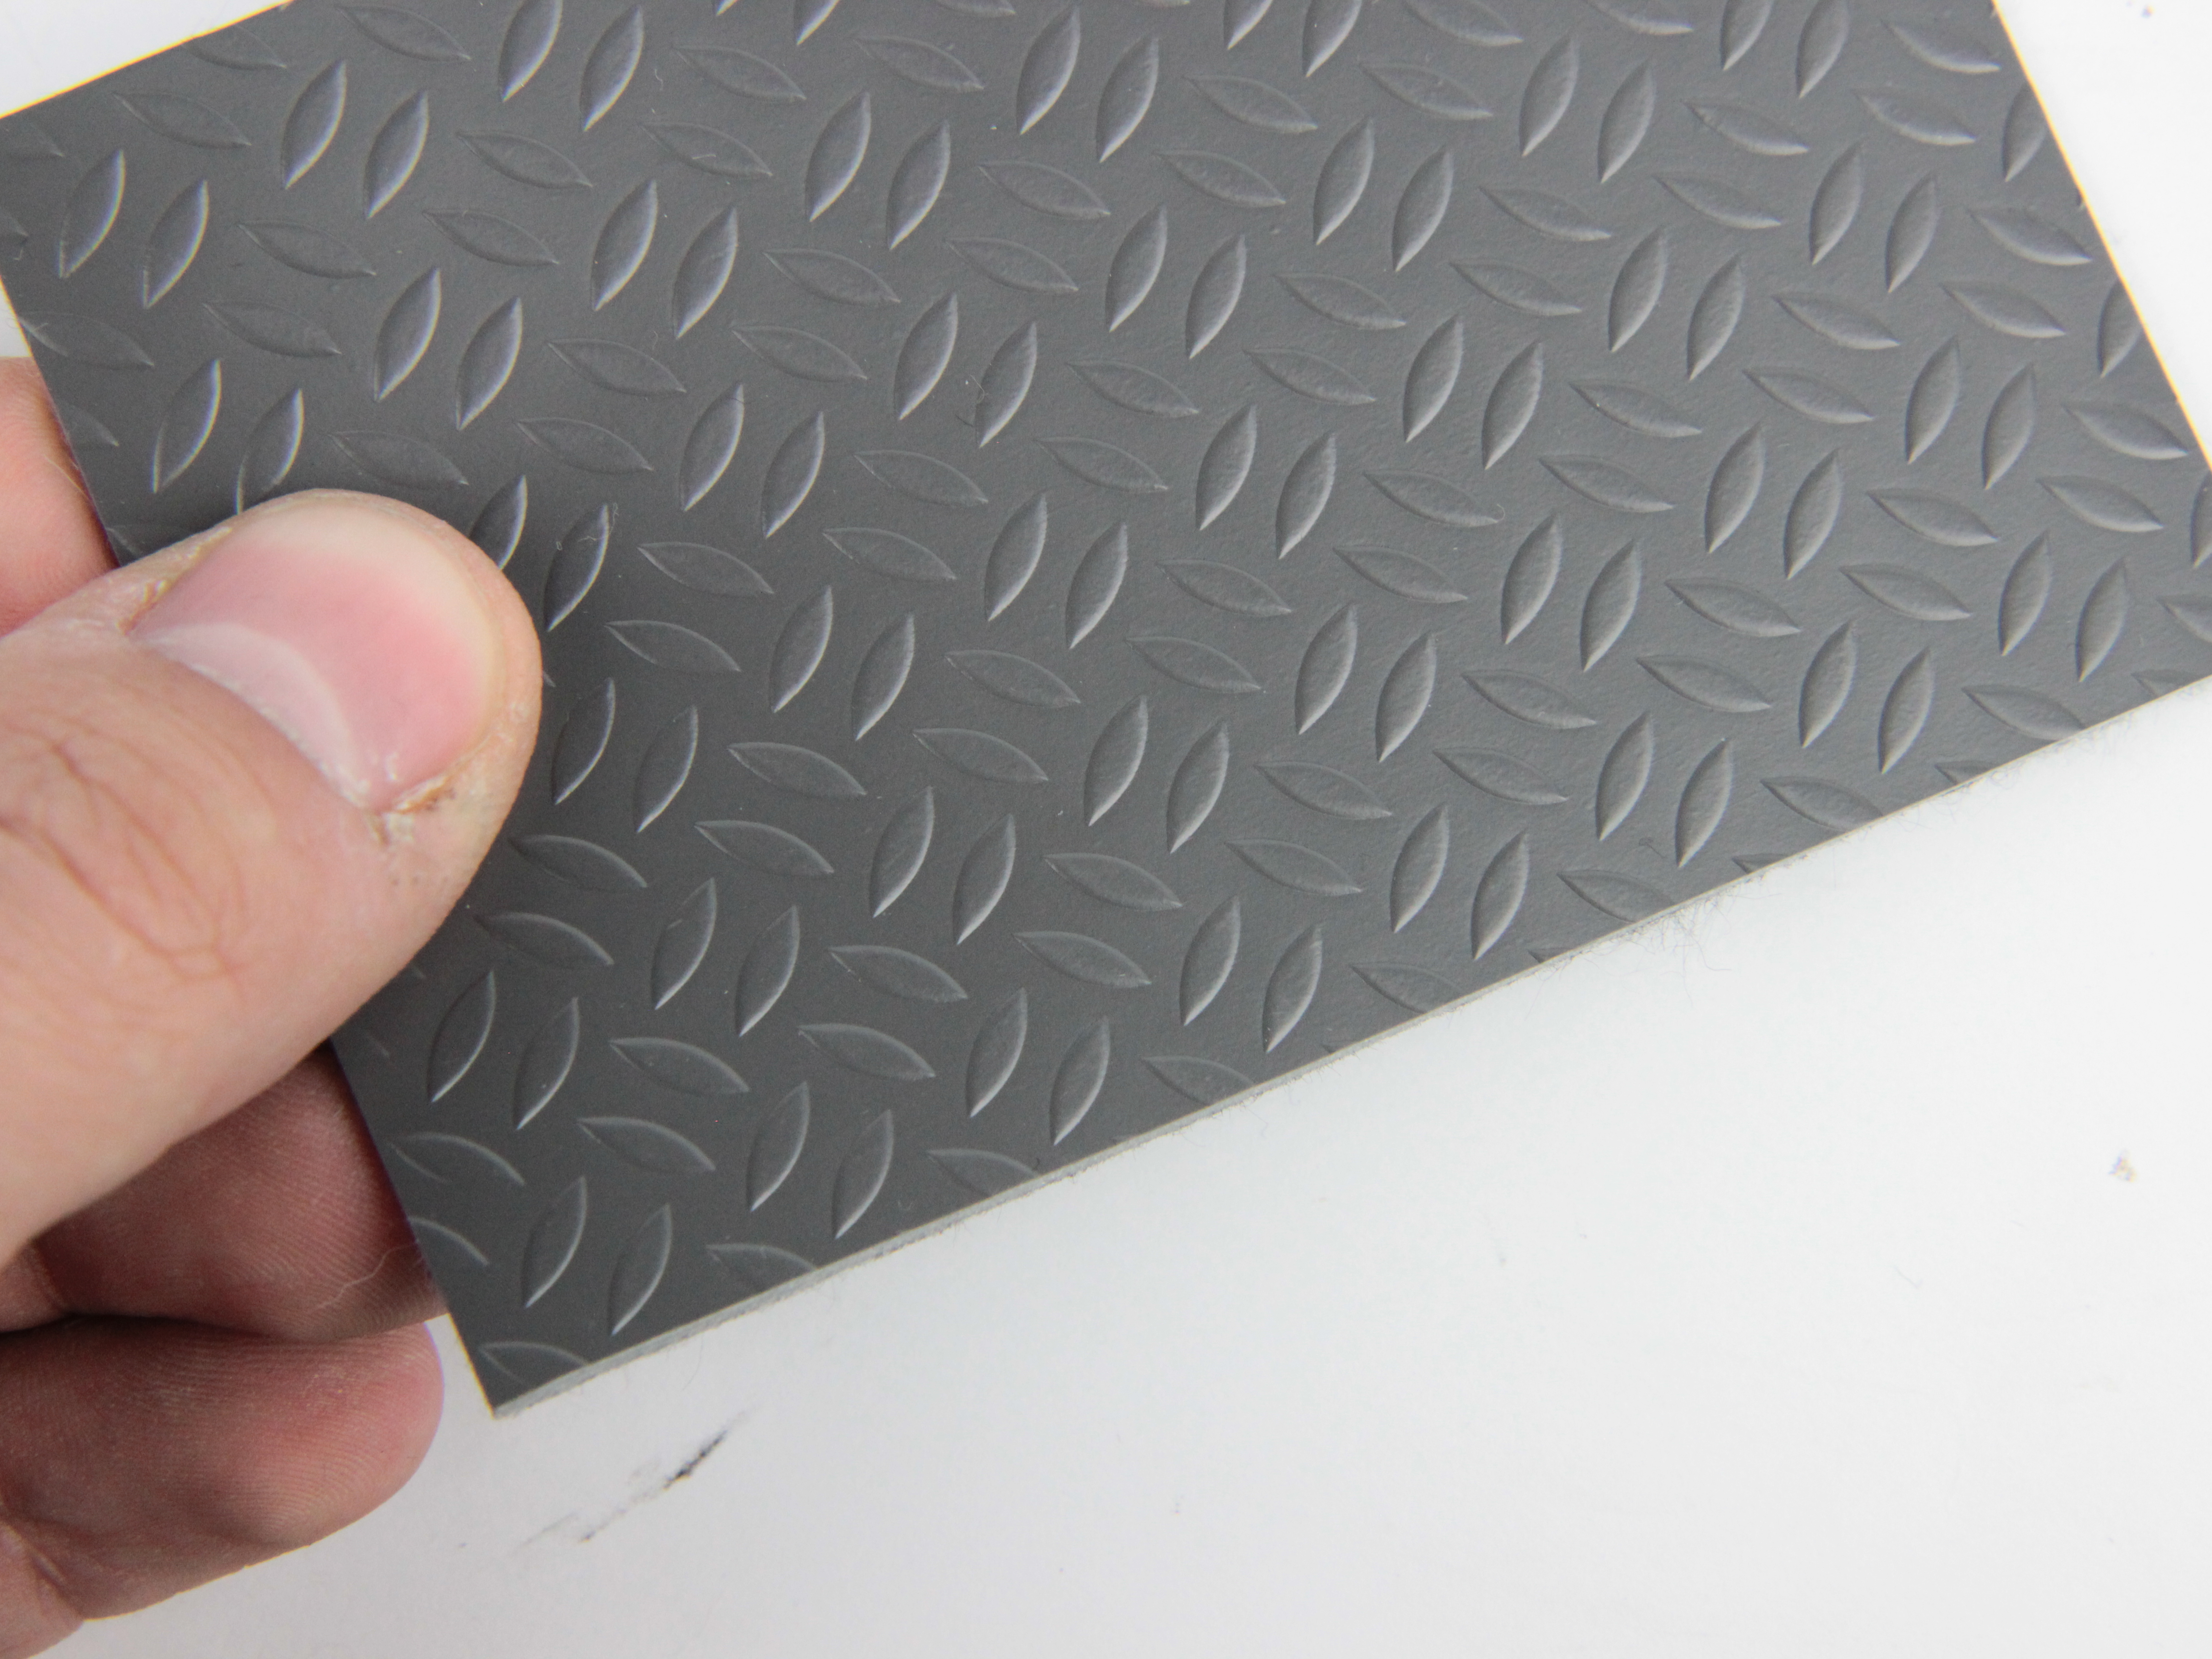 Автолінолеум Craft "Подвійна рядок", колір сірий, товщина 1,6 мм, ширина 180см, Туреччина детальна фотка